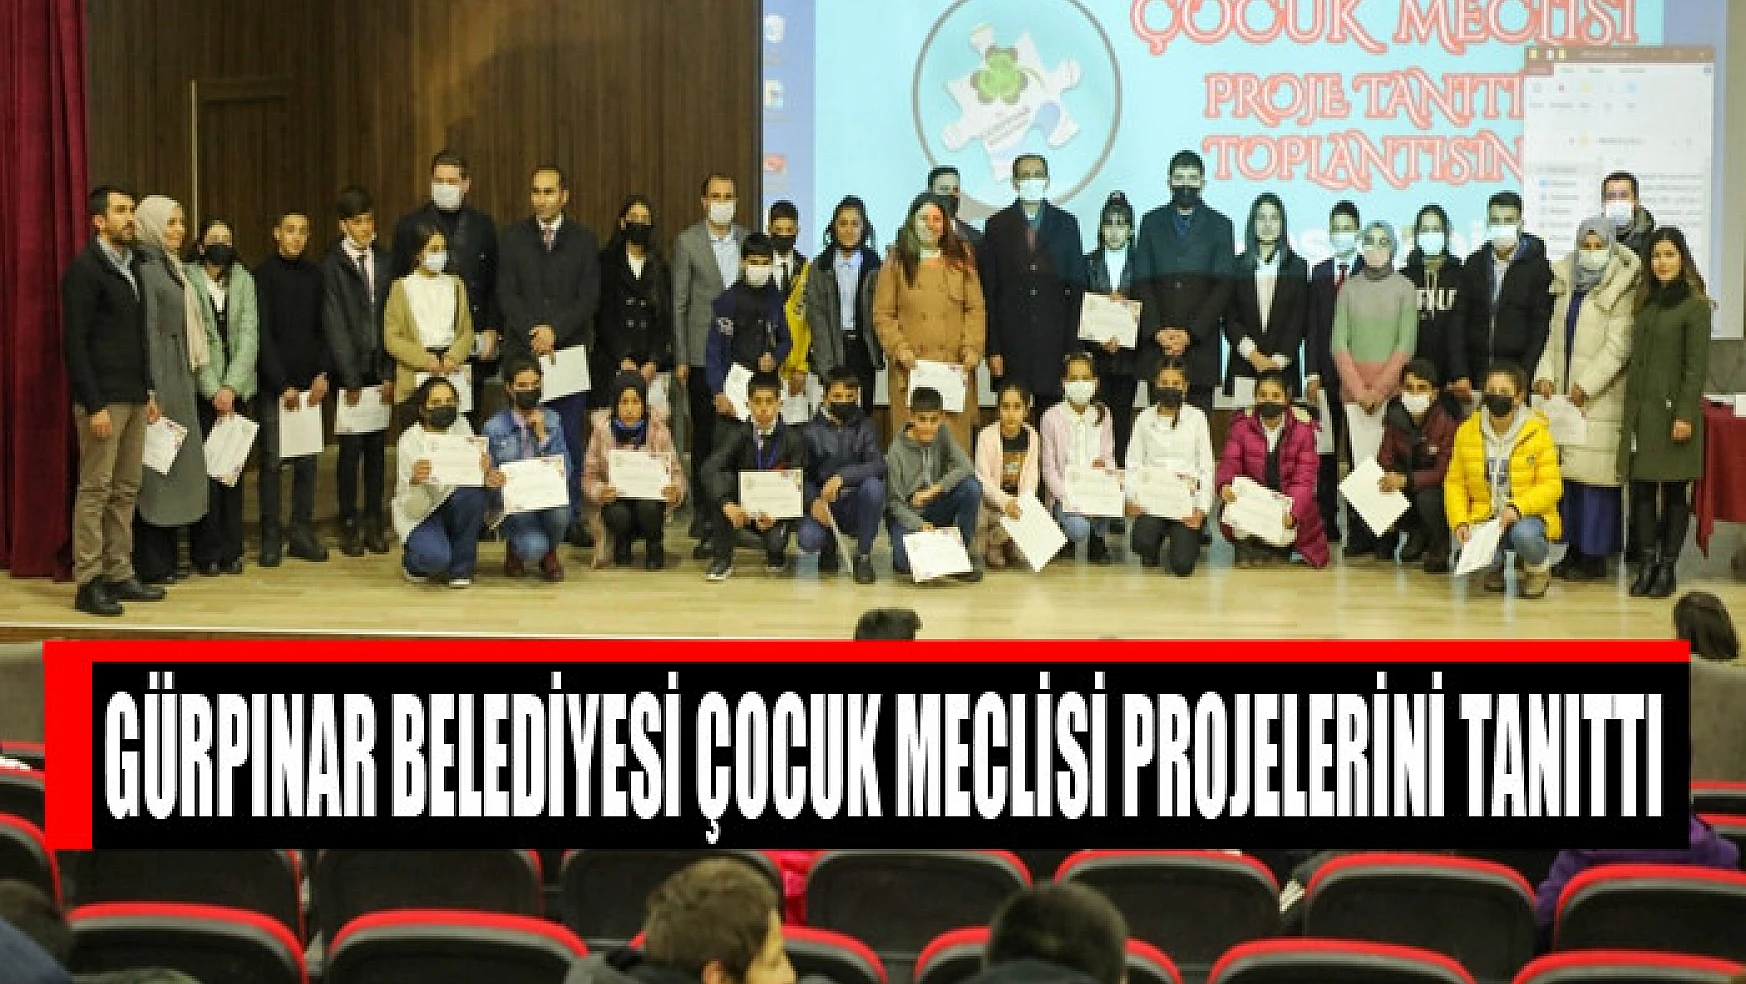 Gürpınar Belediyesi Çocuk Meclisi Projelerini Tanıttı